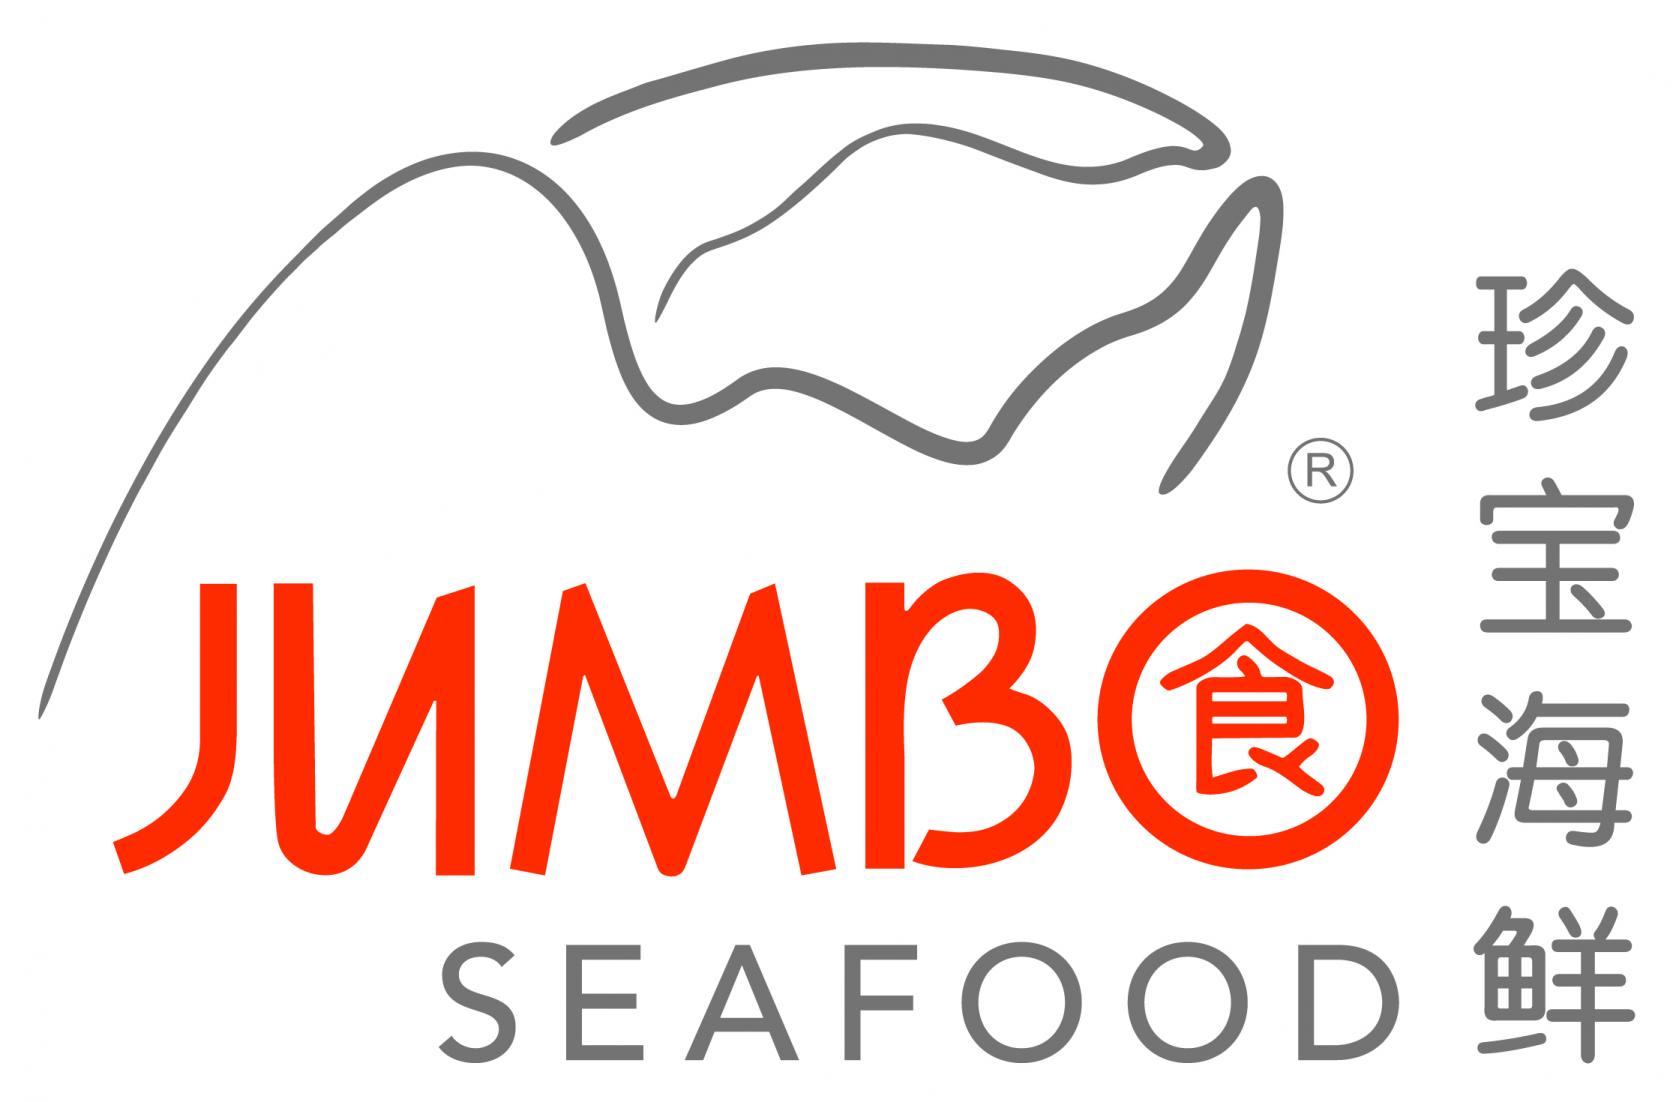 Jumbo Seafood Restaurant